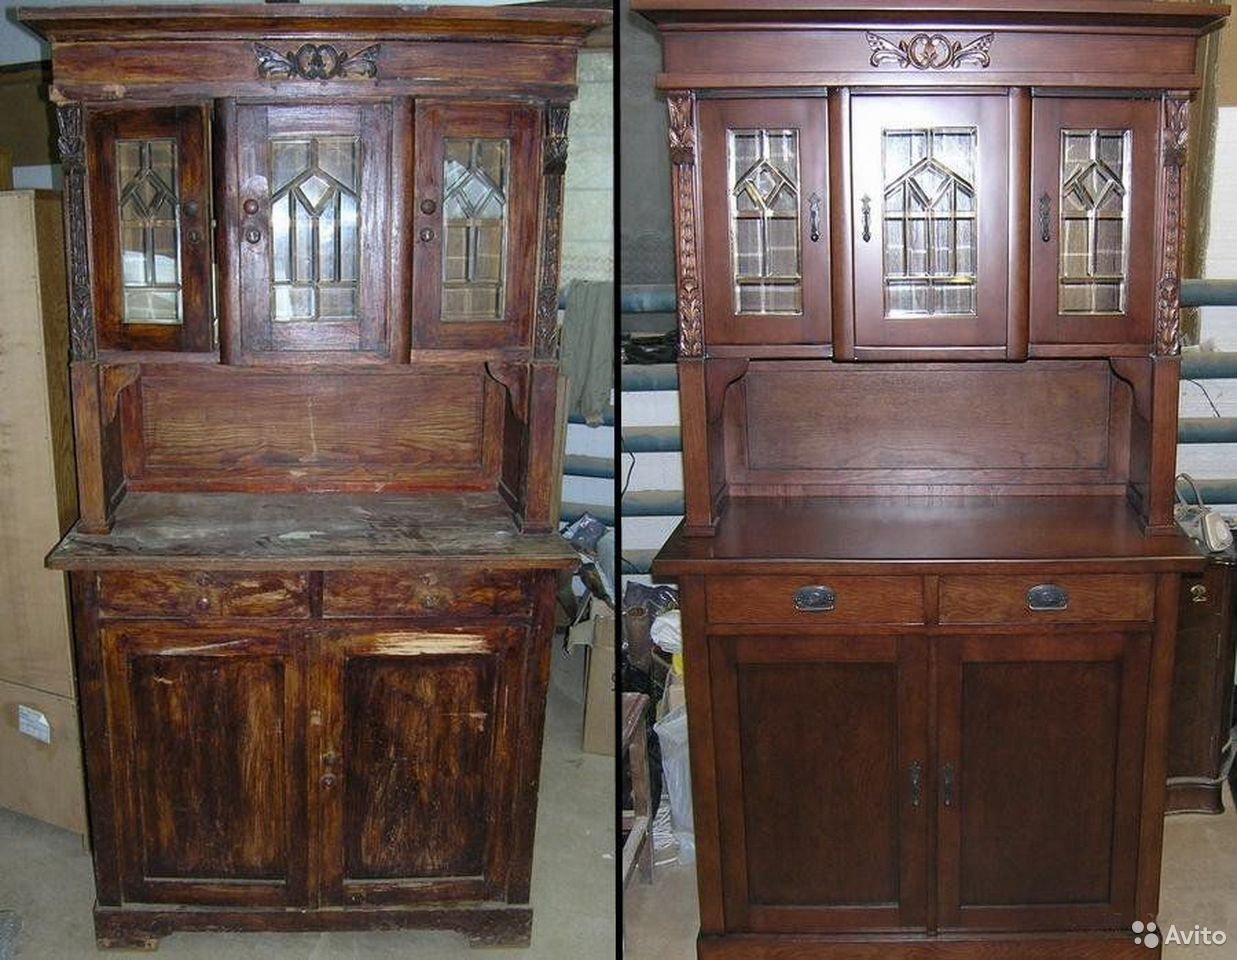 Старинная реставрация. Старая мебель. Реставрируем деревянную мебель. Старинные шкафы и Буфеты. Отреставрированная деревянная мебель.